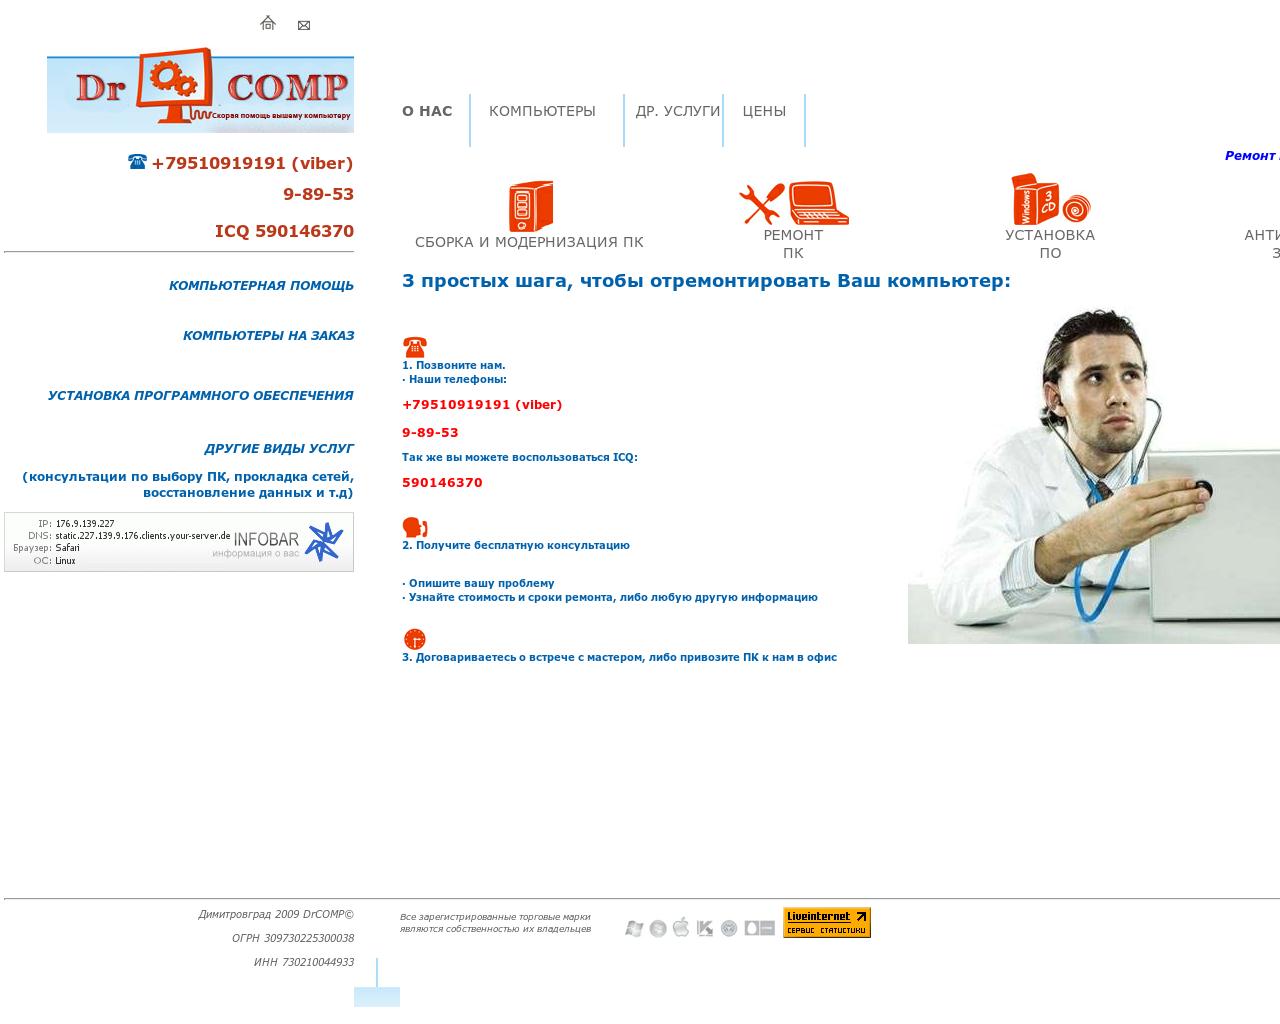 Изображение сайта dd-comp.ru в разрешении 1280x1024